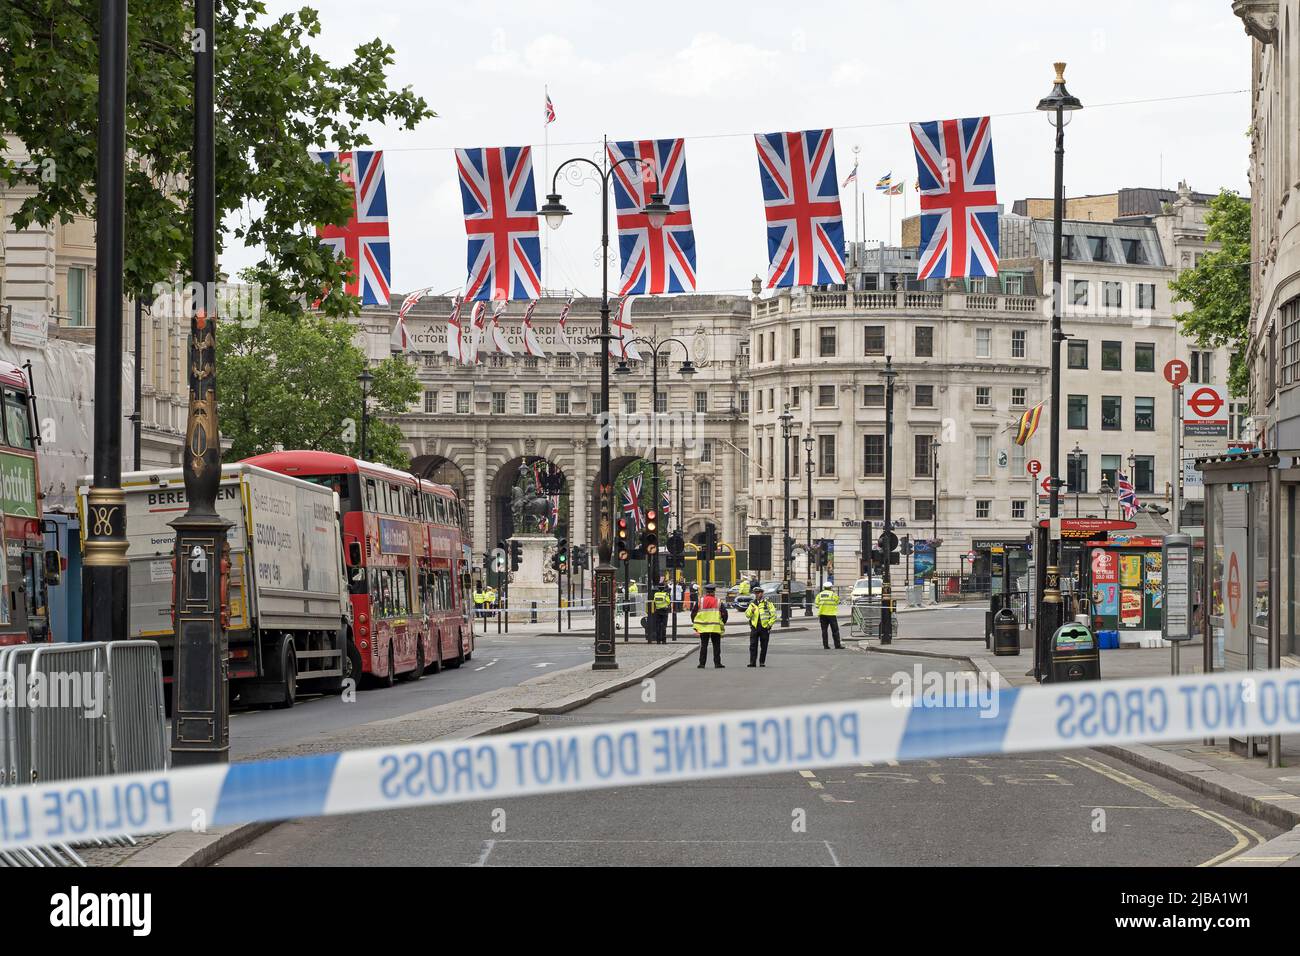 La police s'occupe d'un colis suspect à Trafalgar Square et doit quitter la zone pour effectuer une explosion contrôlée. Londres - 4th juin 2022 Banque D'Images